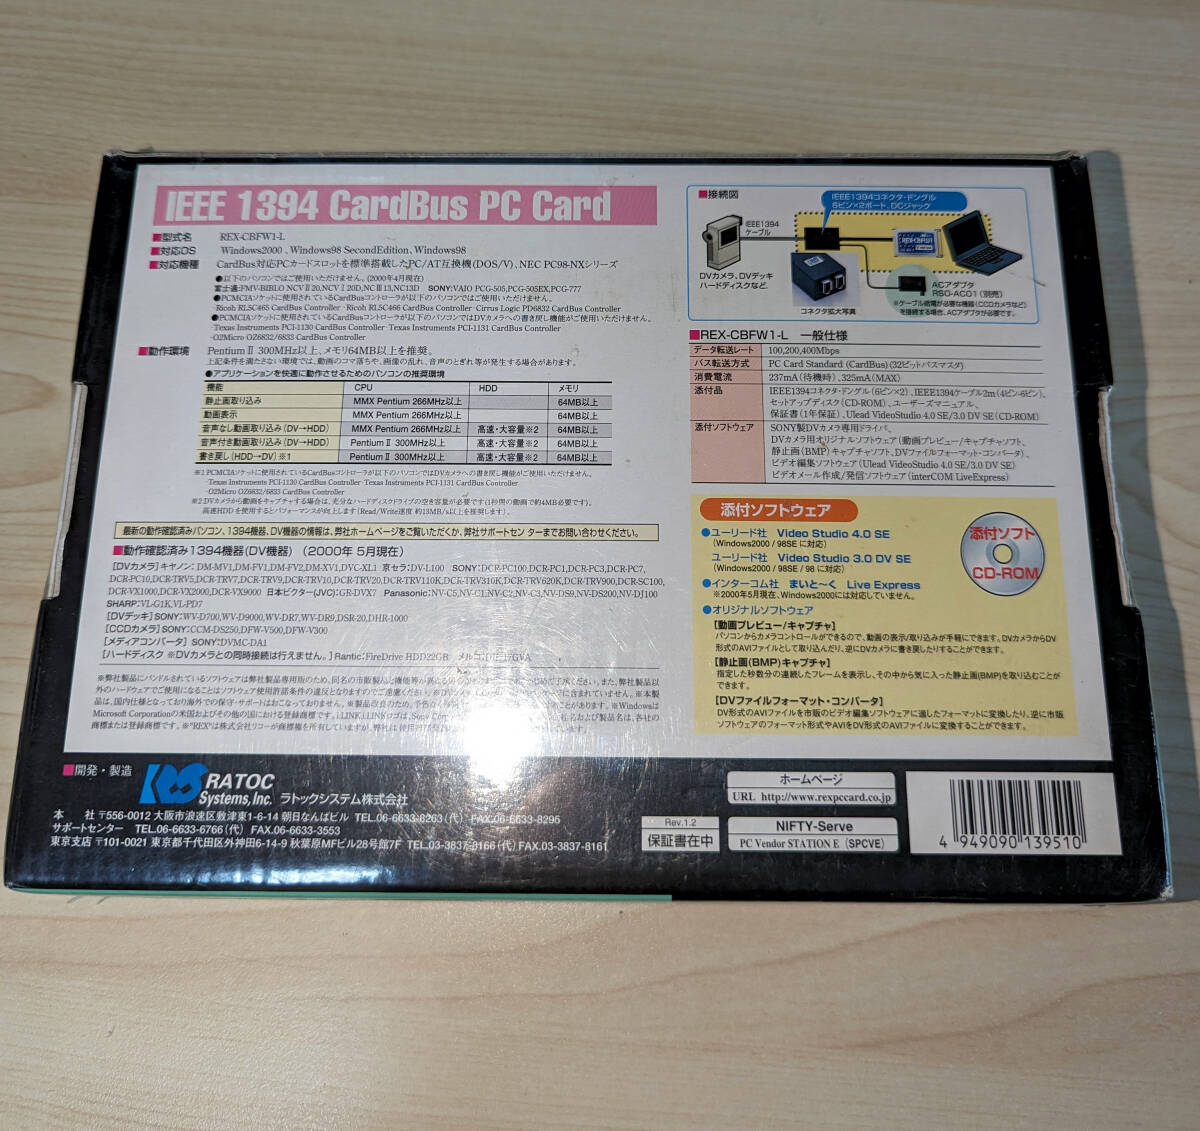 CARDBUS PC карта REX-CBFW1-L IEEE1394(FireWire) интерфейс панель,.. не использовался 